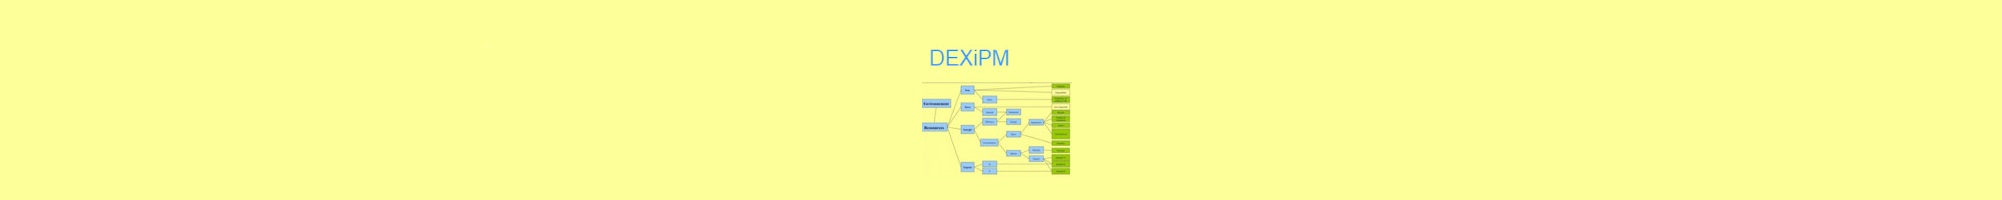 DEXiPM model